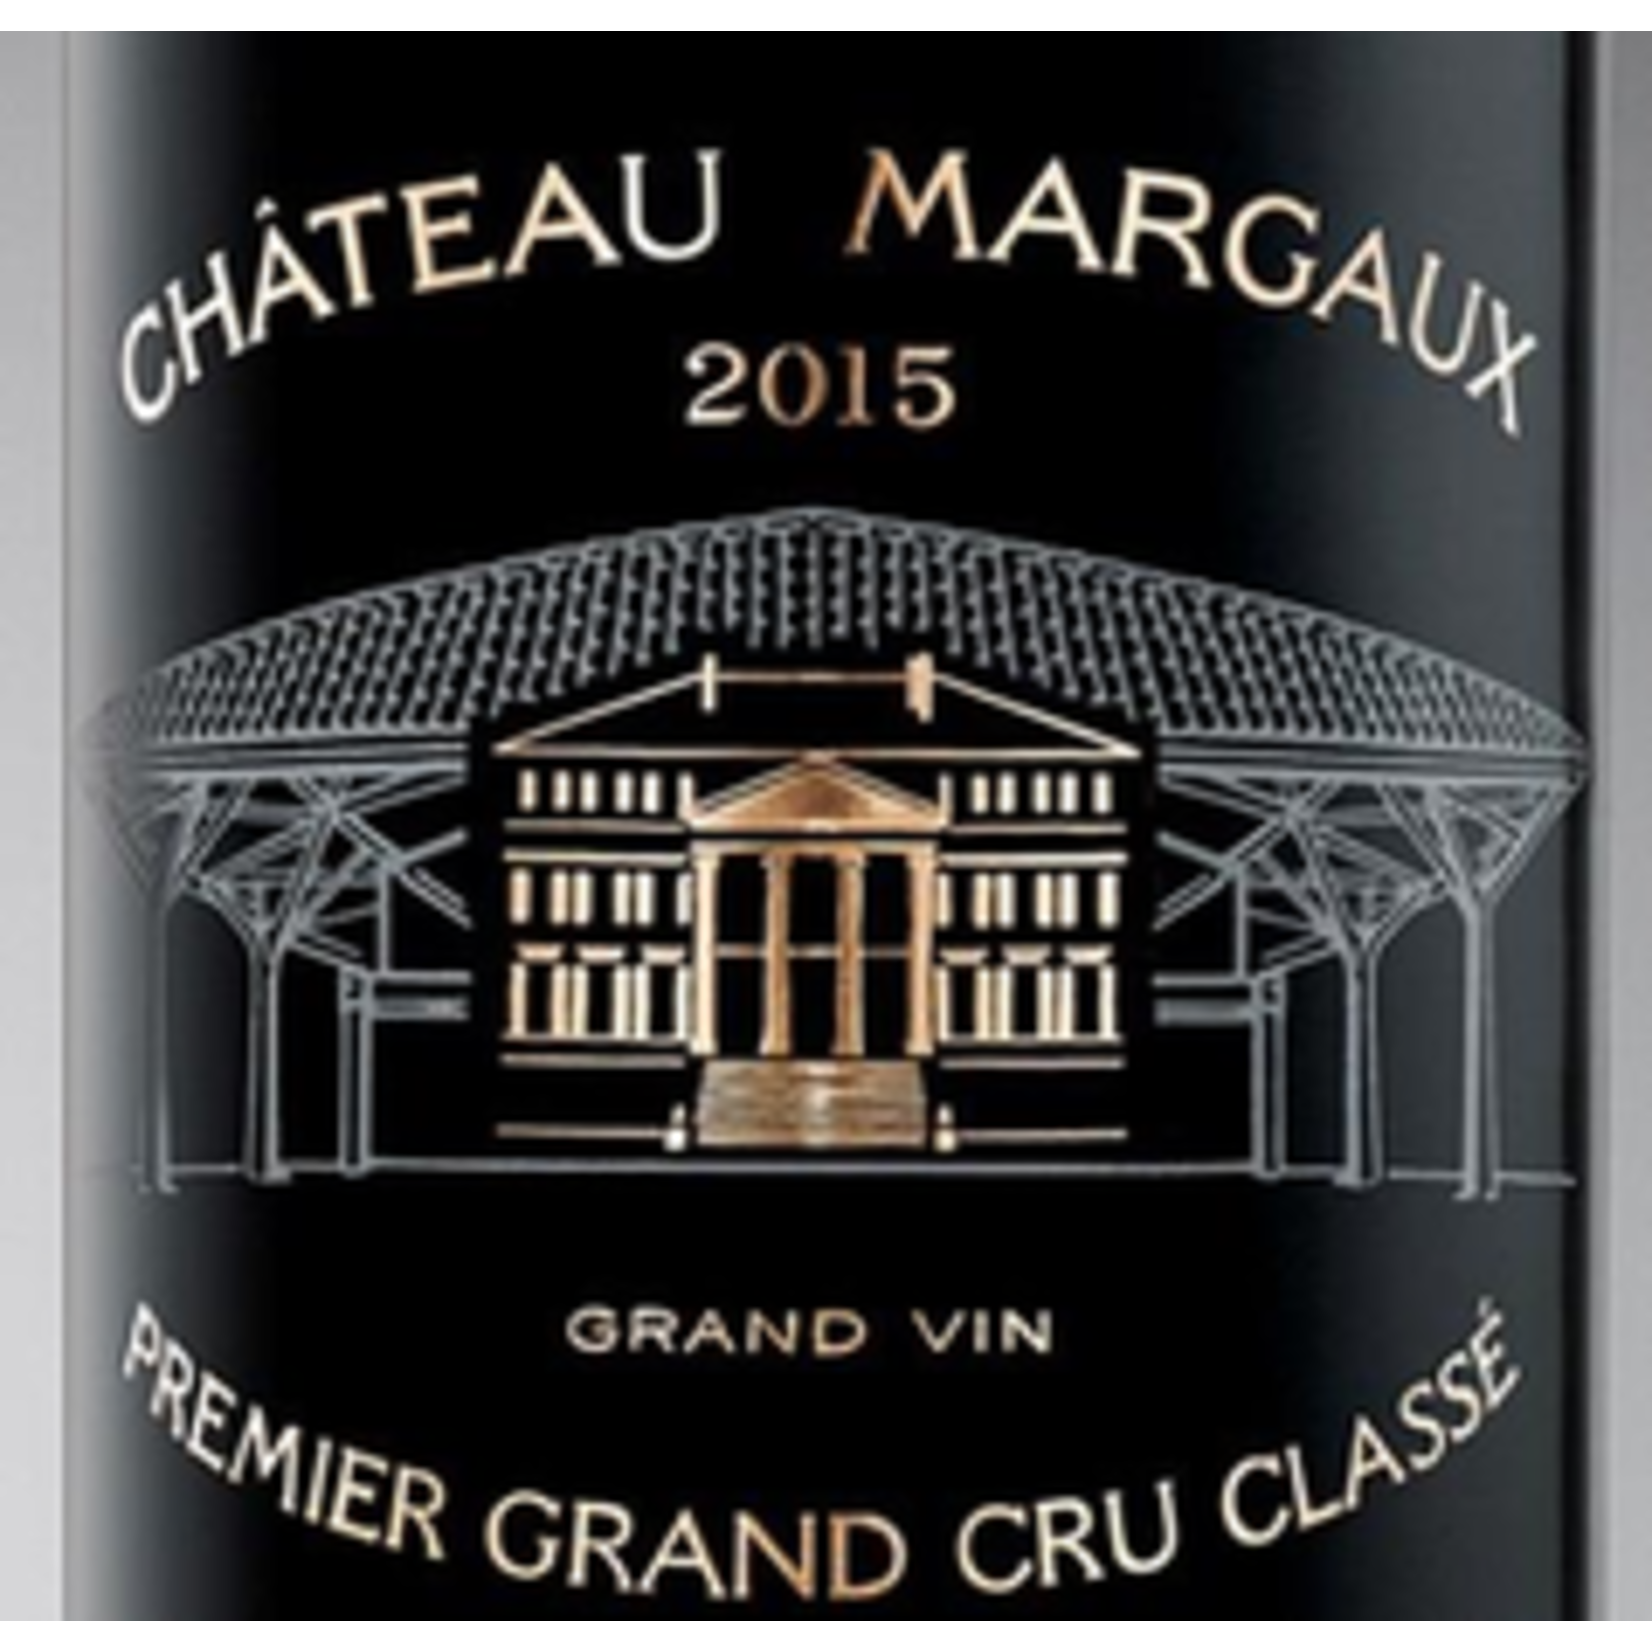 Wine Chateau Margaux Premier Grand Cru Classé 2015